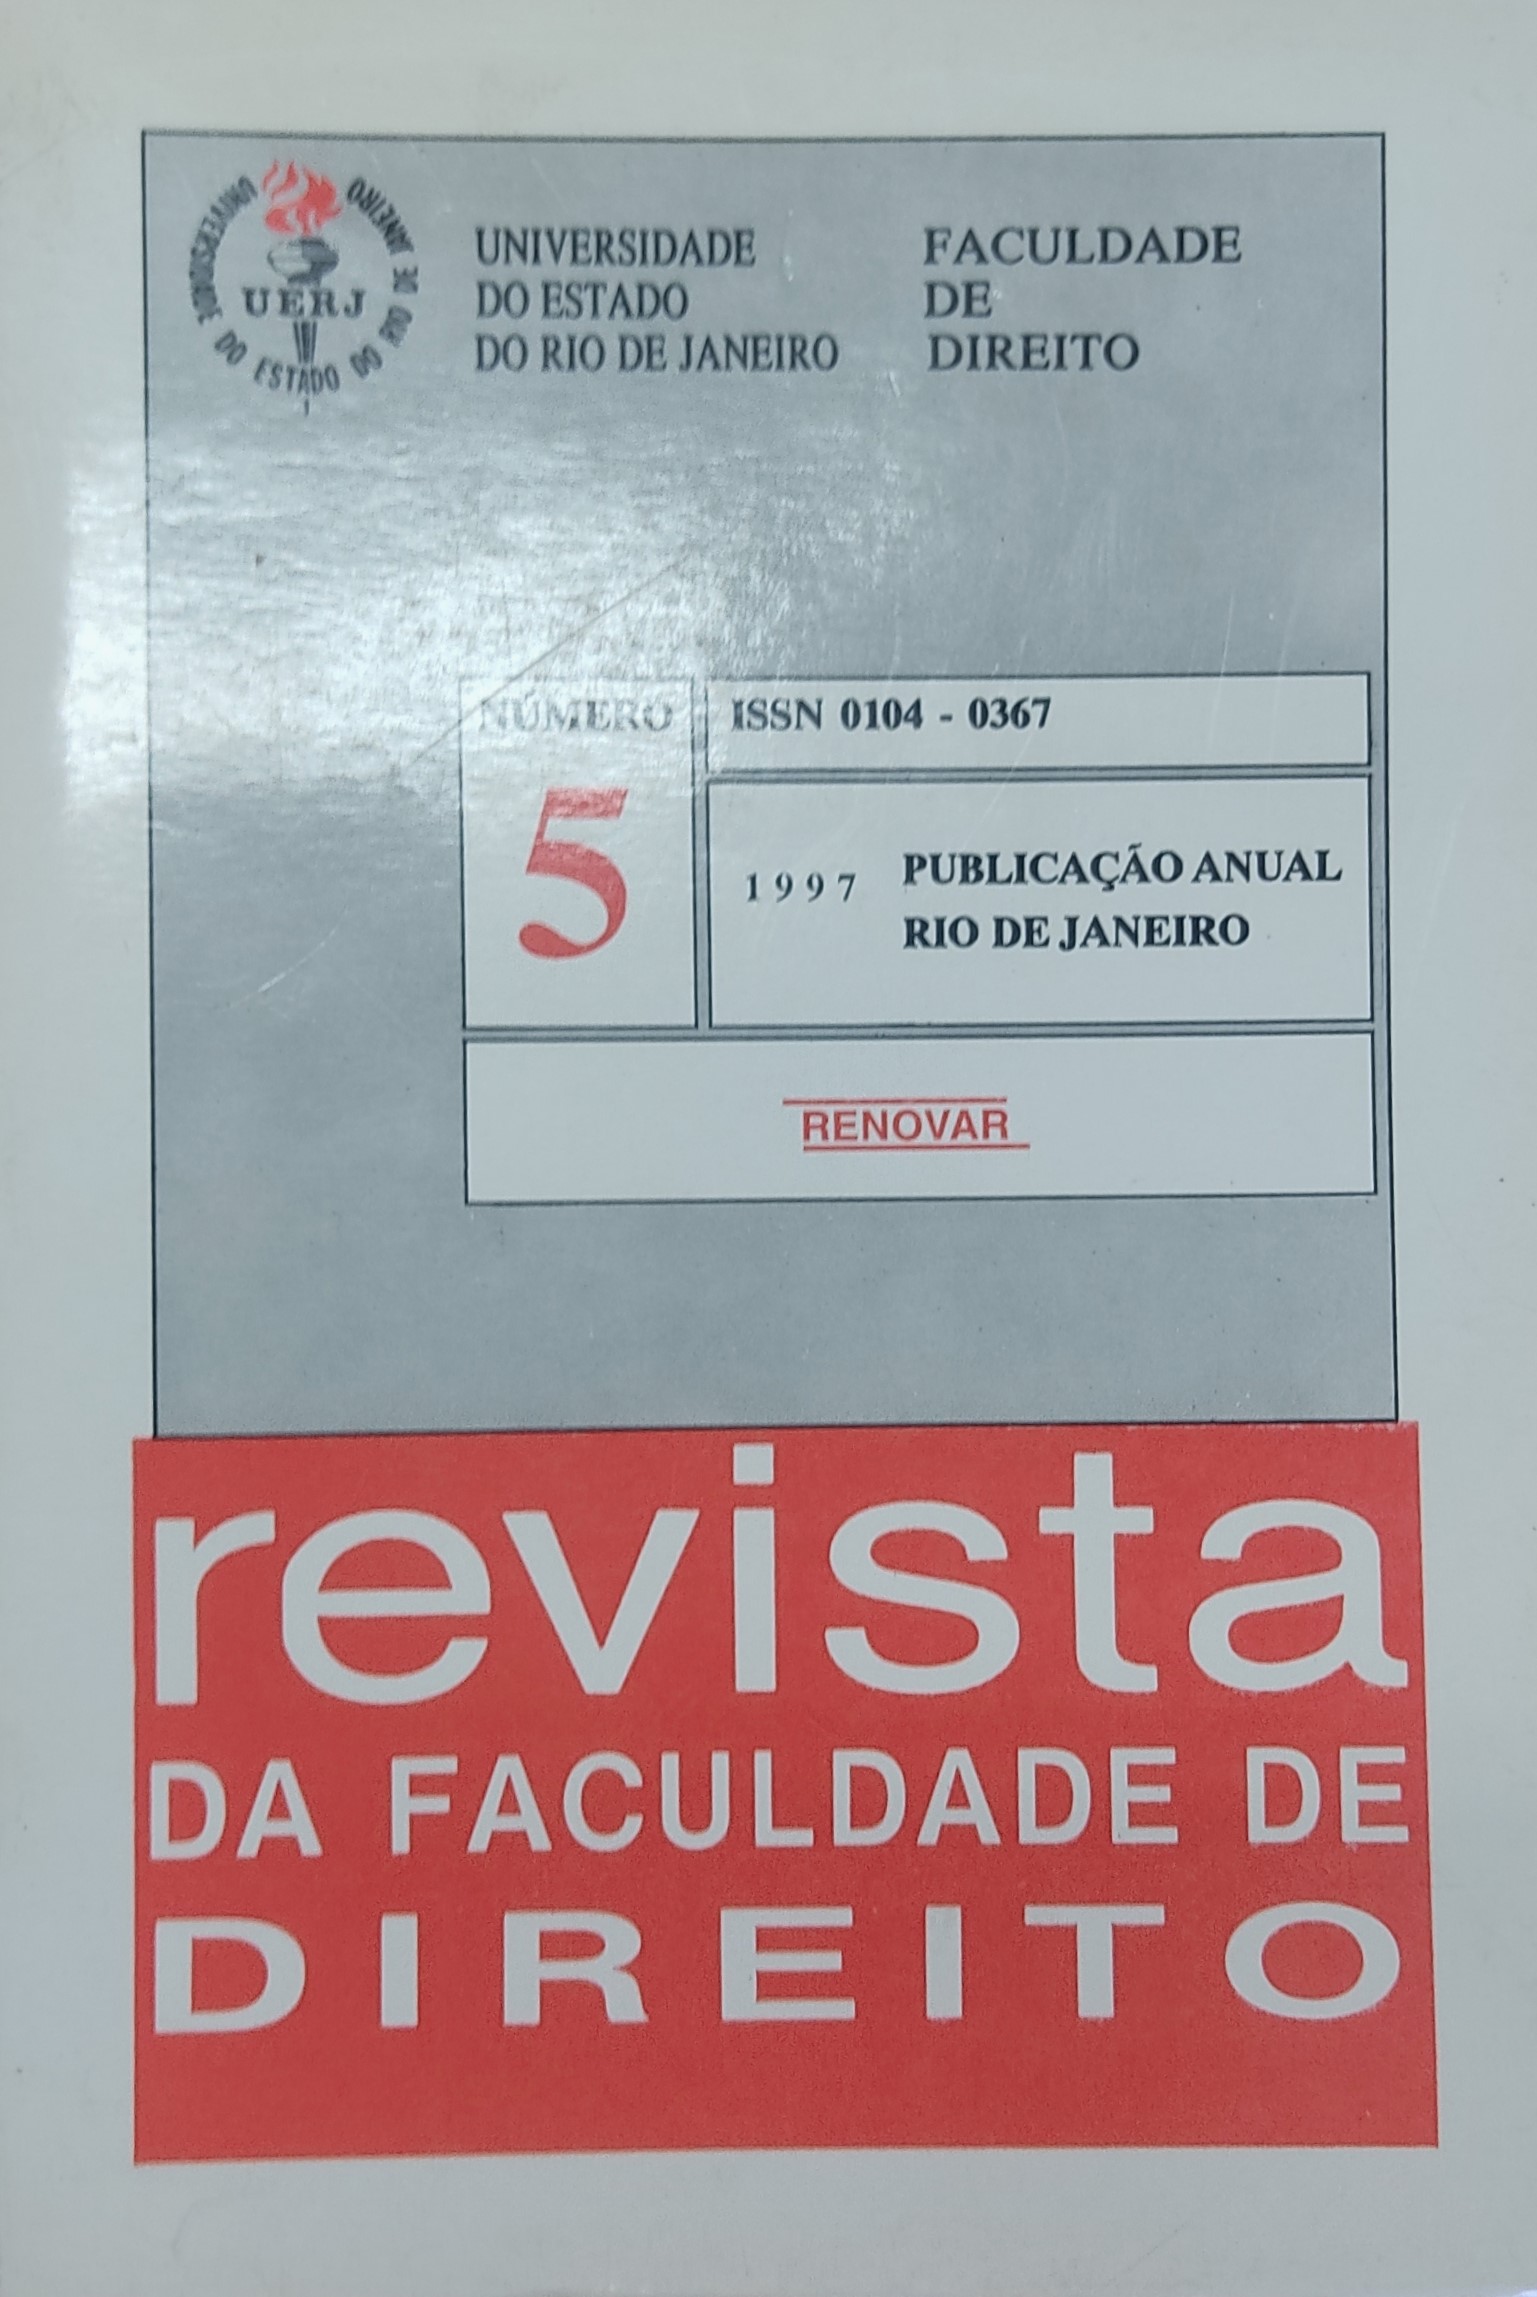 					Visualizar n. 5 (1997): Revista da Faculdade de Direito da UERJ - RFD
				